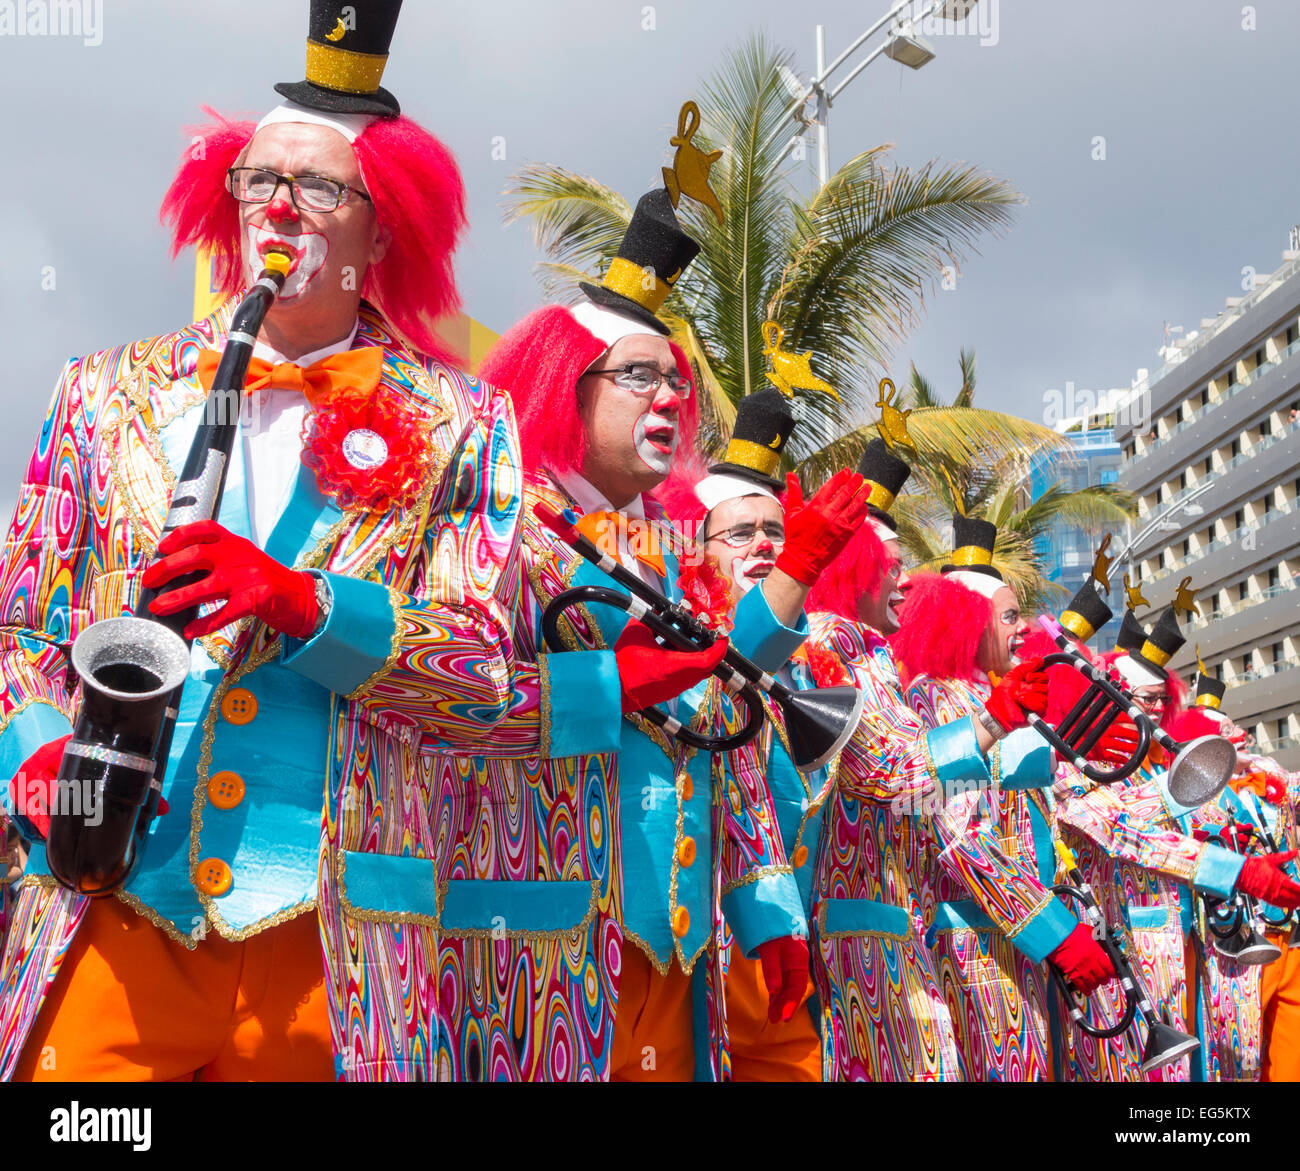 Las Palmas de Gran Canaria, Isole Canarie, Spagna. Il 17 gennaio, 2015, coloratissimi costumi a Las Palmas carnevale a Gran Canaria come il mese lungo Carnevale entra nella sua terza settimana. Credito: ALANDAWSONPHOTOGRAPHY/Alamy Live News Foto Stock